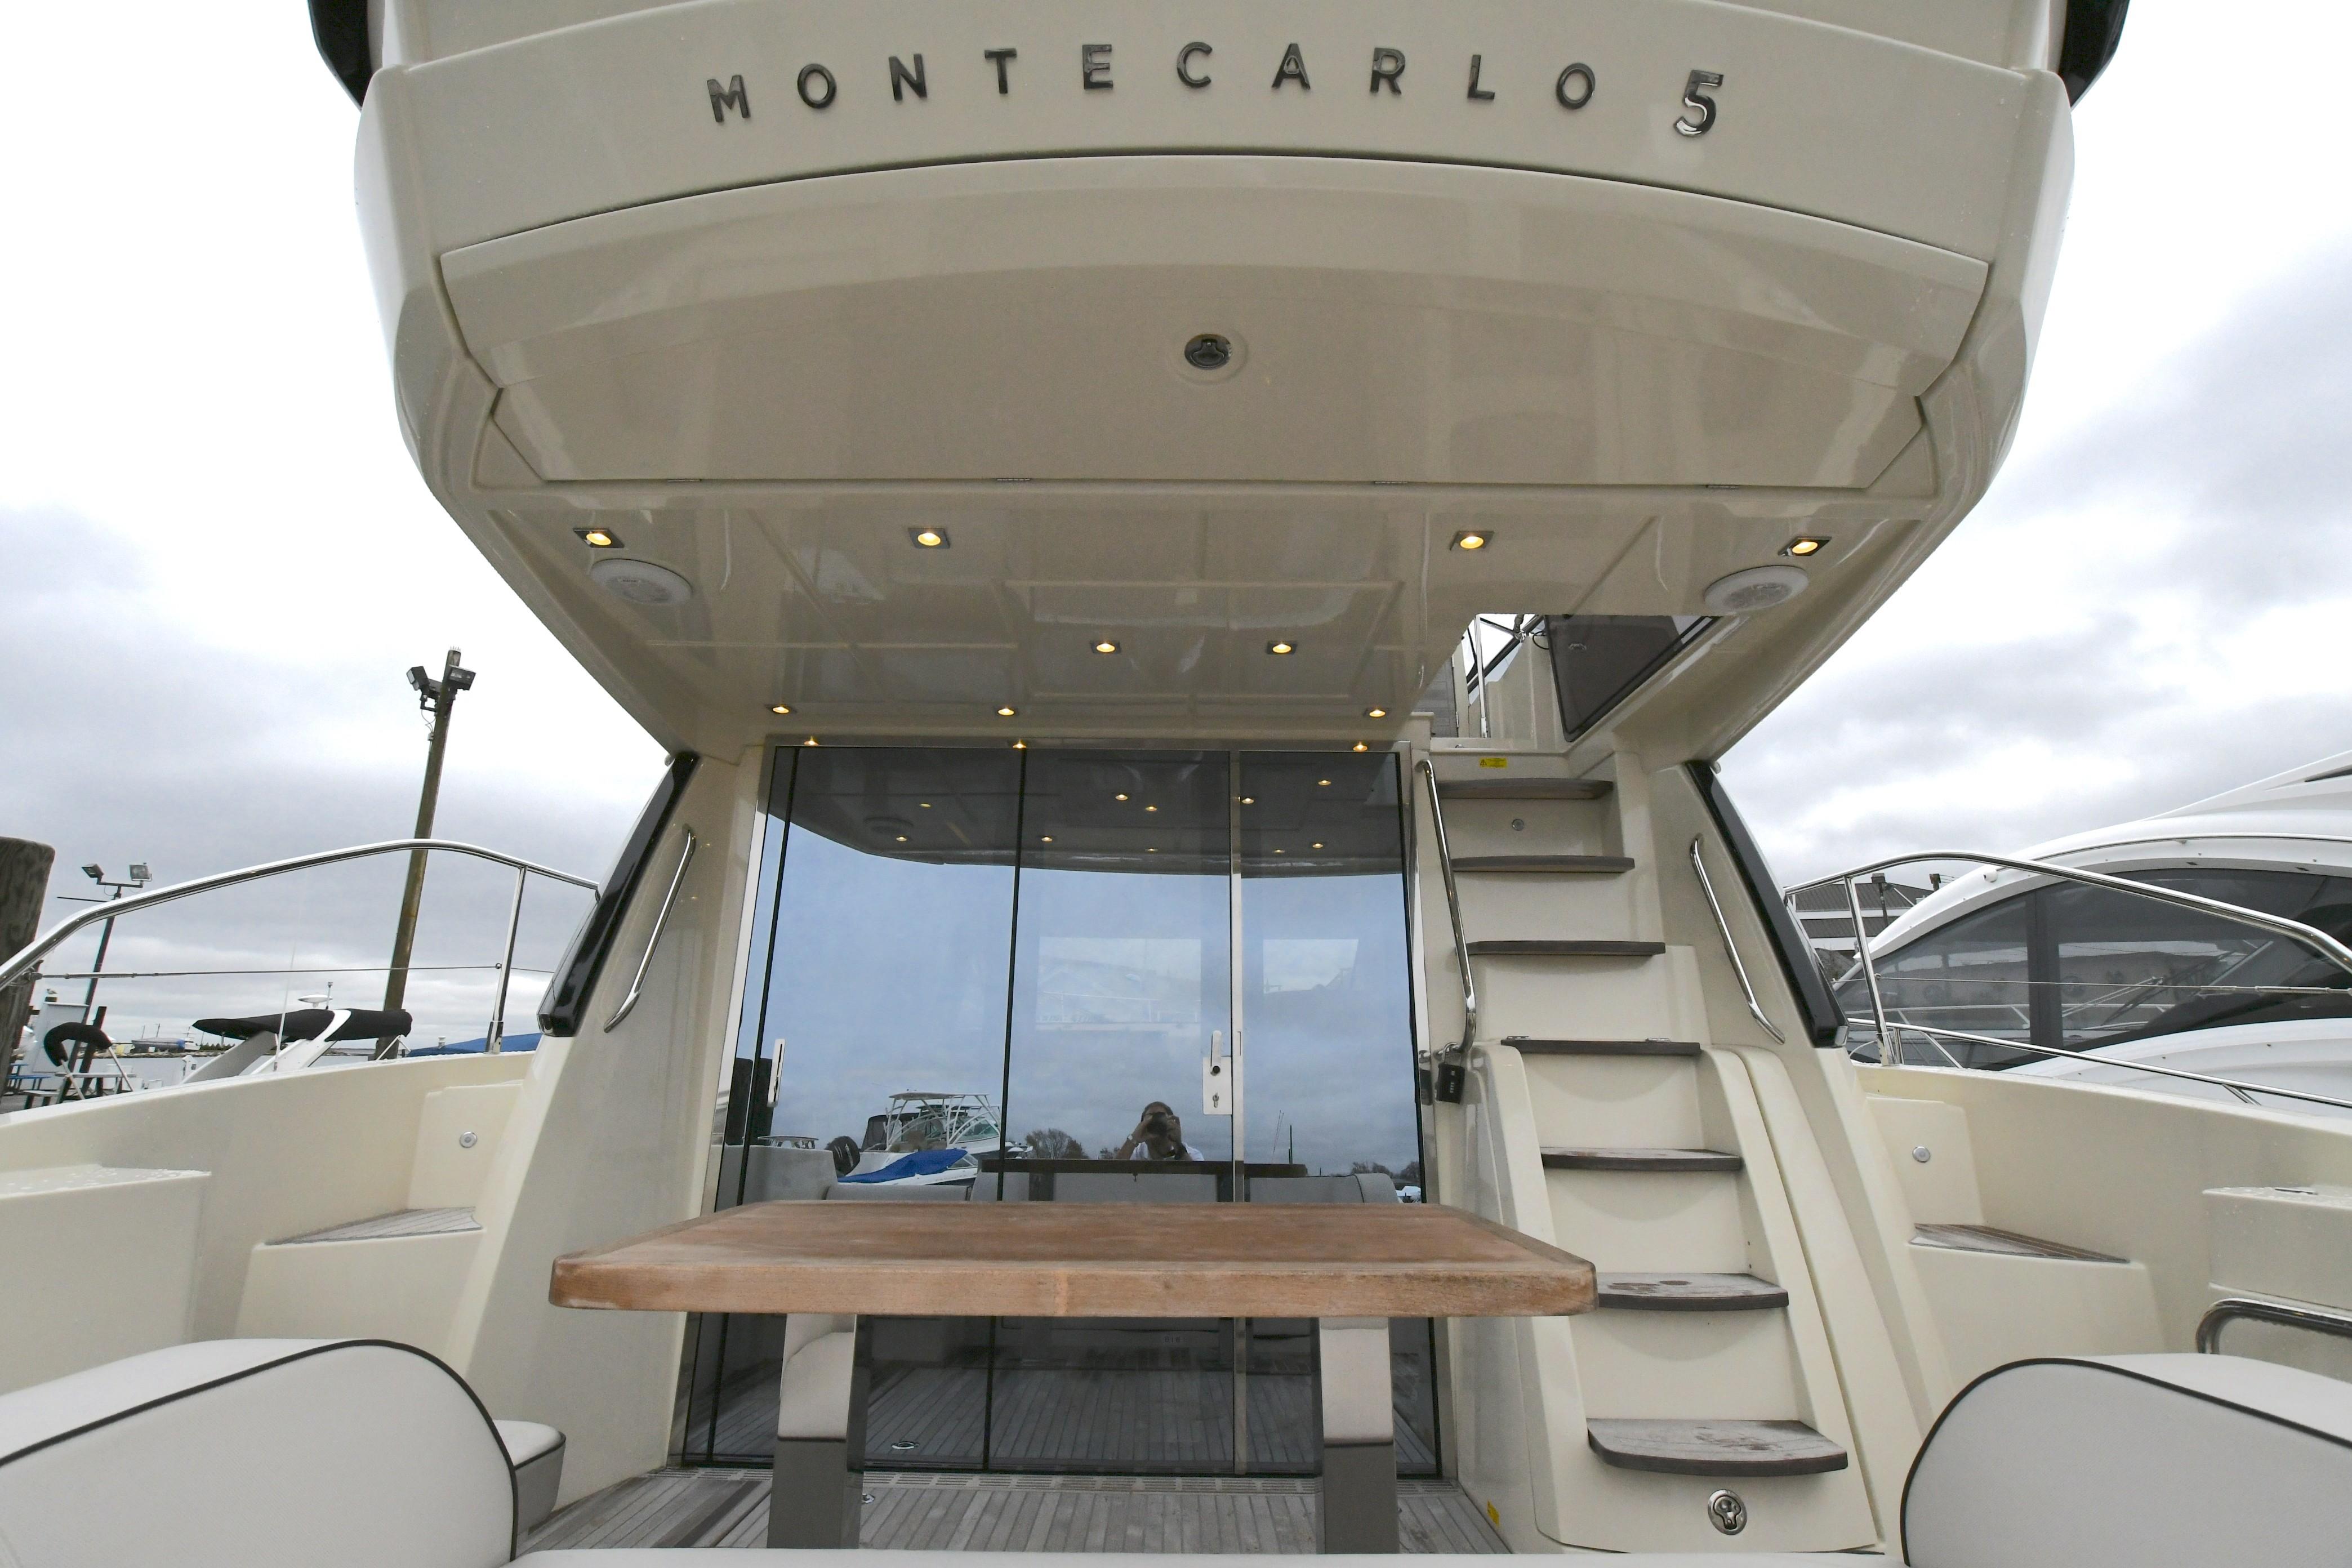 2016 Monte Carlo MC5